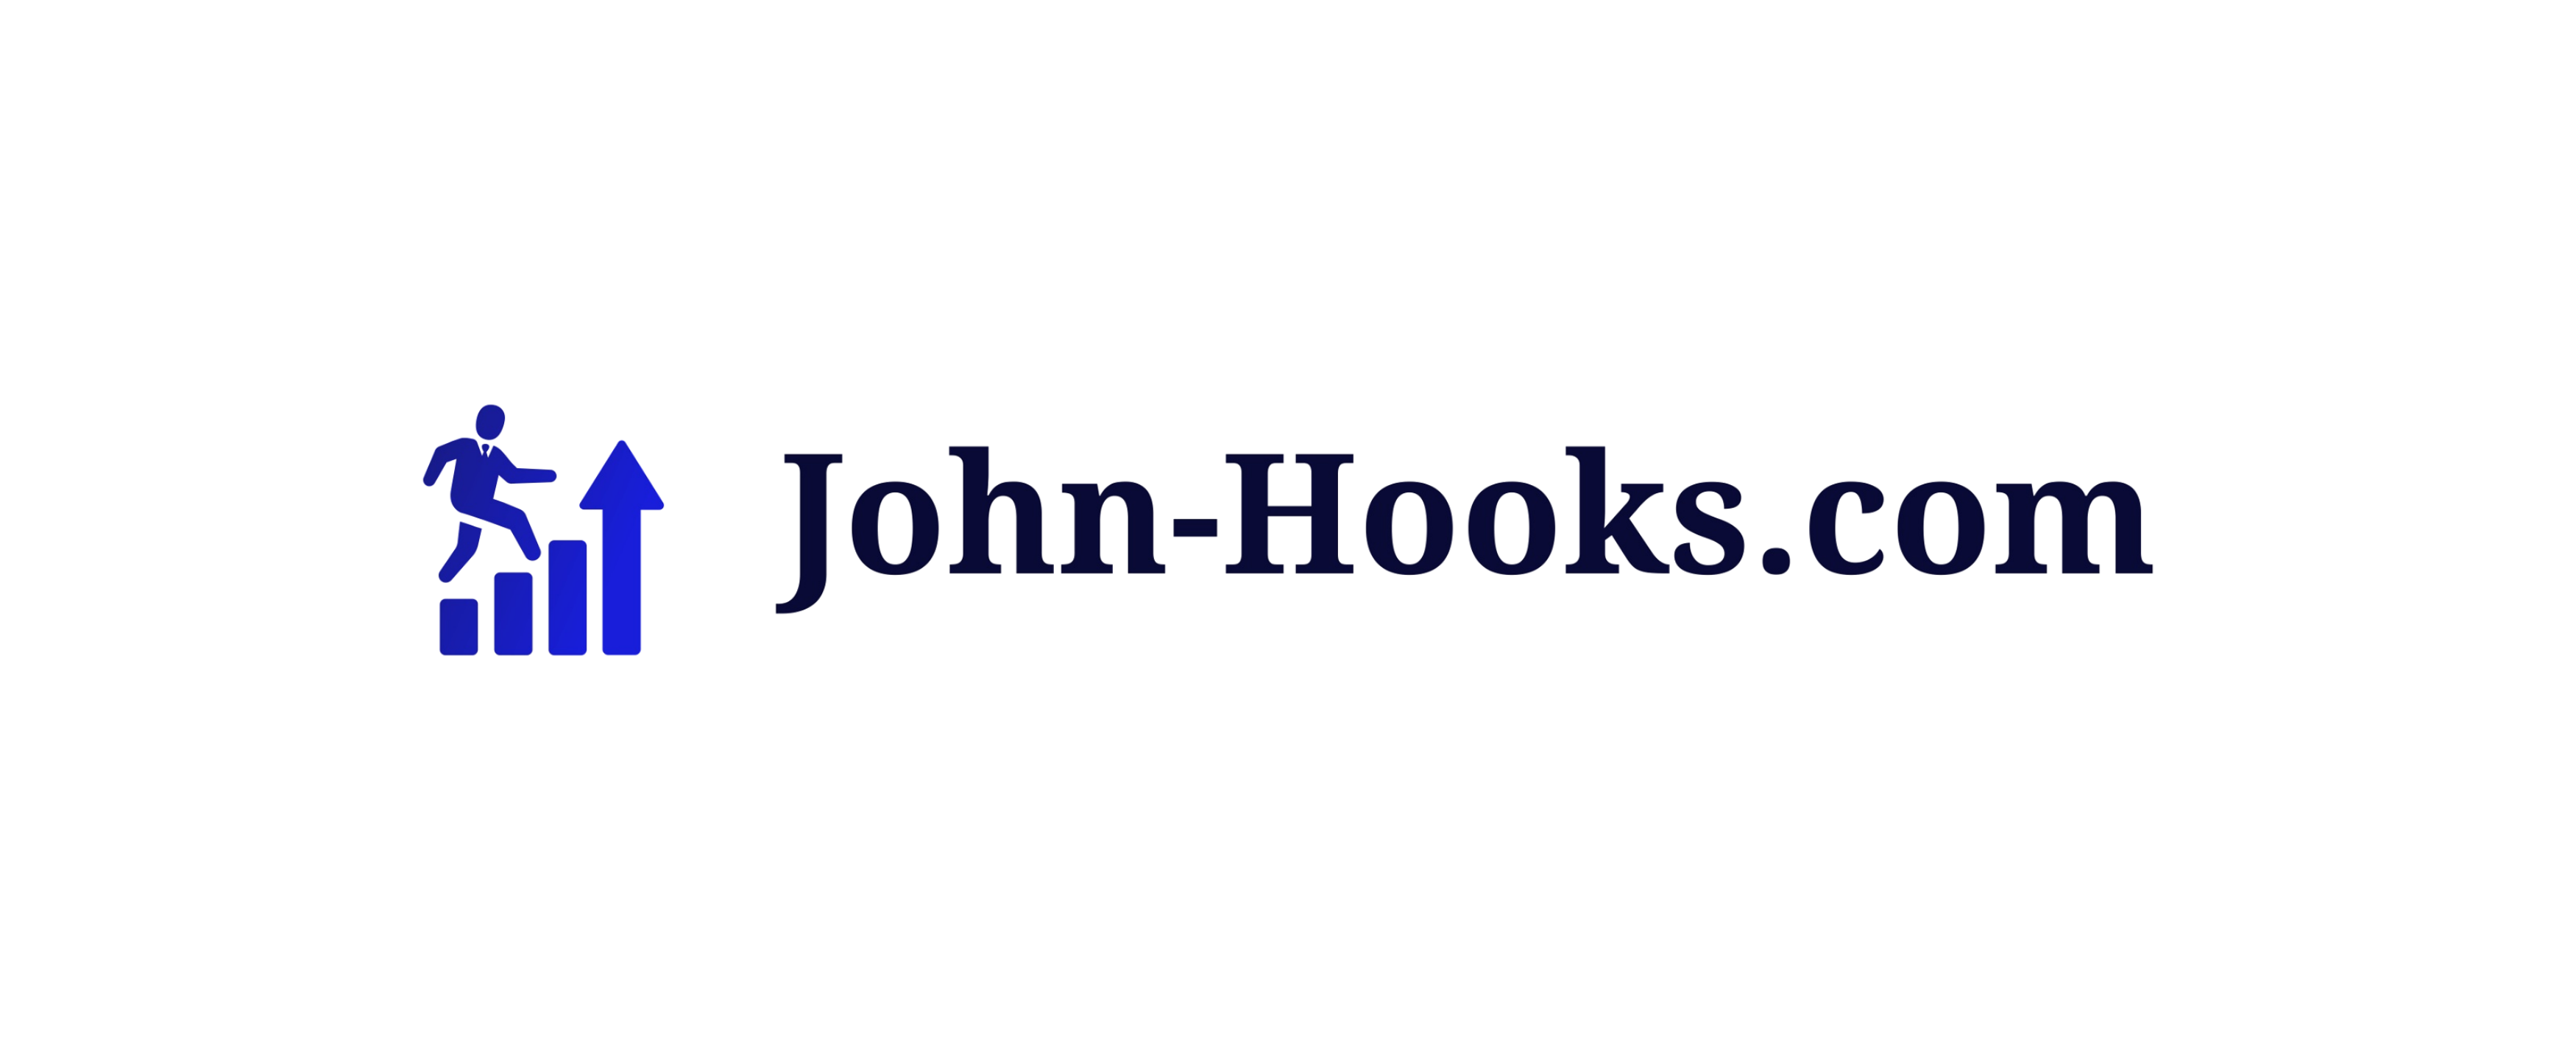 John-Hooks.com